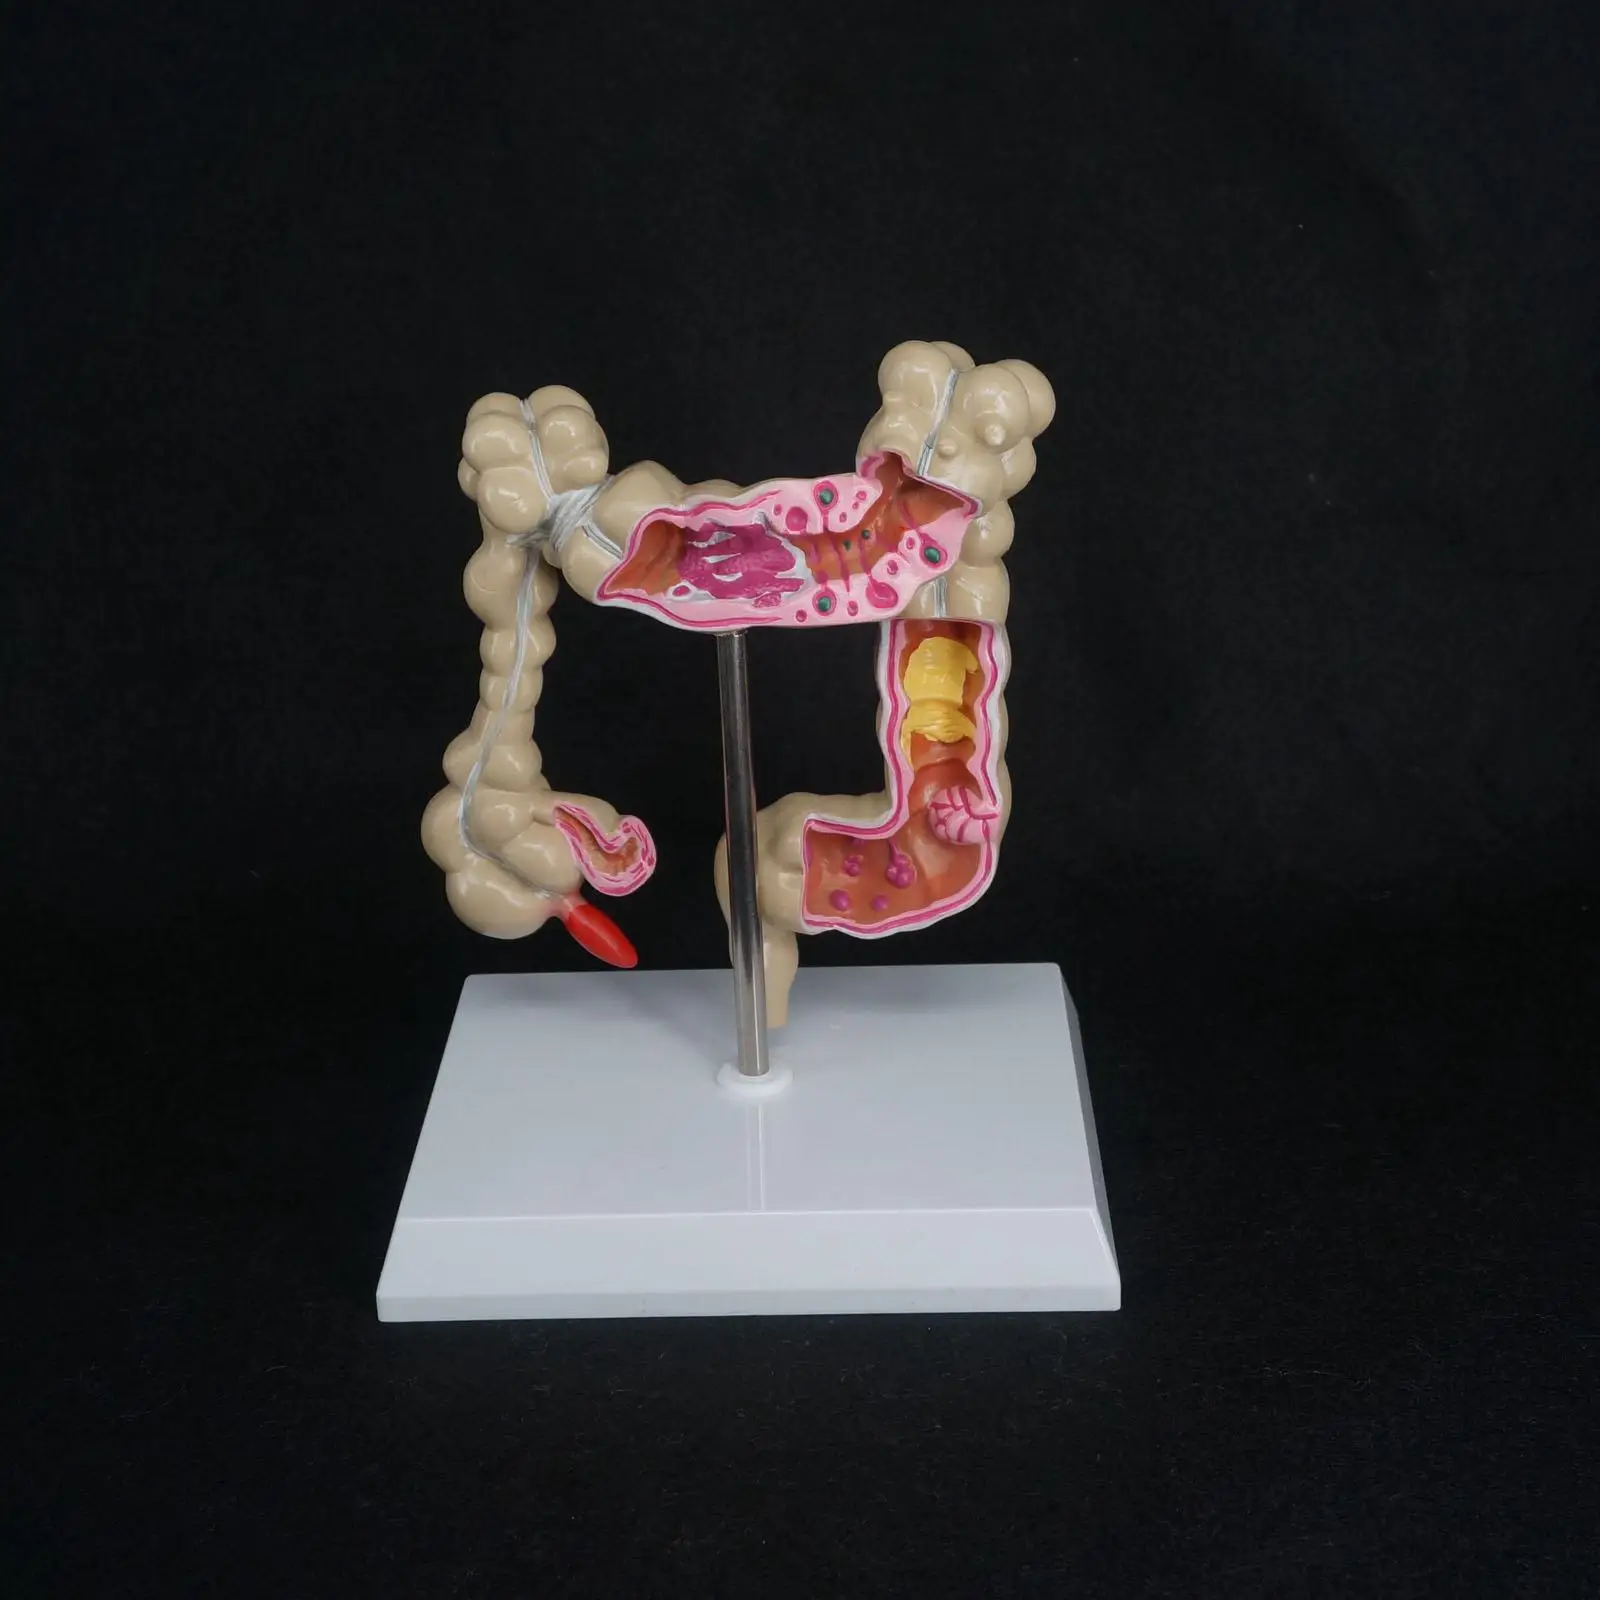 Патологические болезни толстой кишки человека модель орган, анатомия обучающие материалы